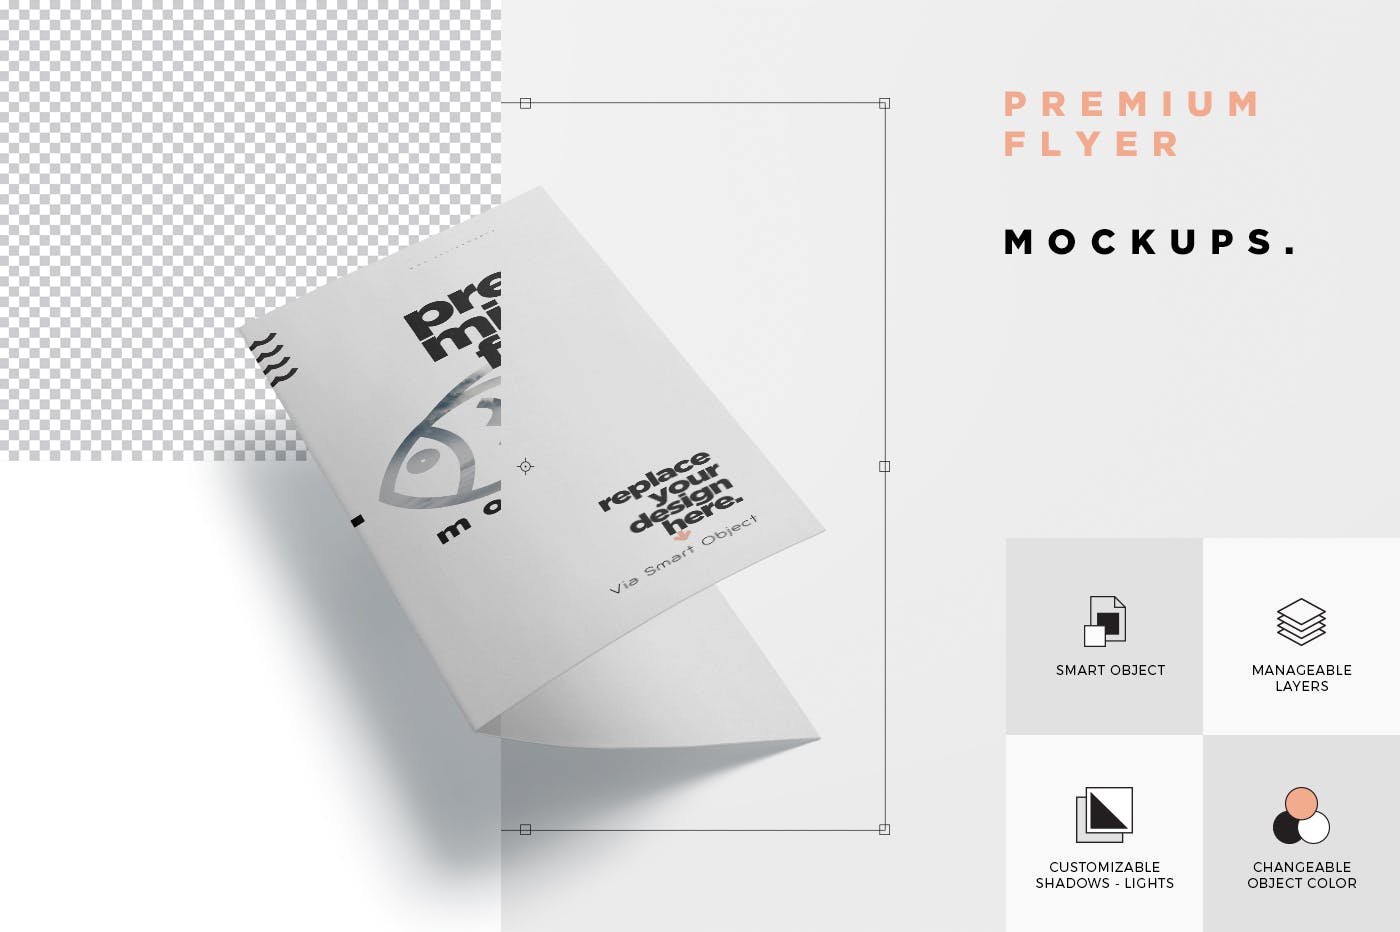 高品质三折页企业/品牌宣传册样机模板 Premium Quality Flyer Mockups插图(6)